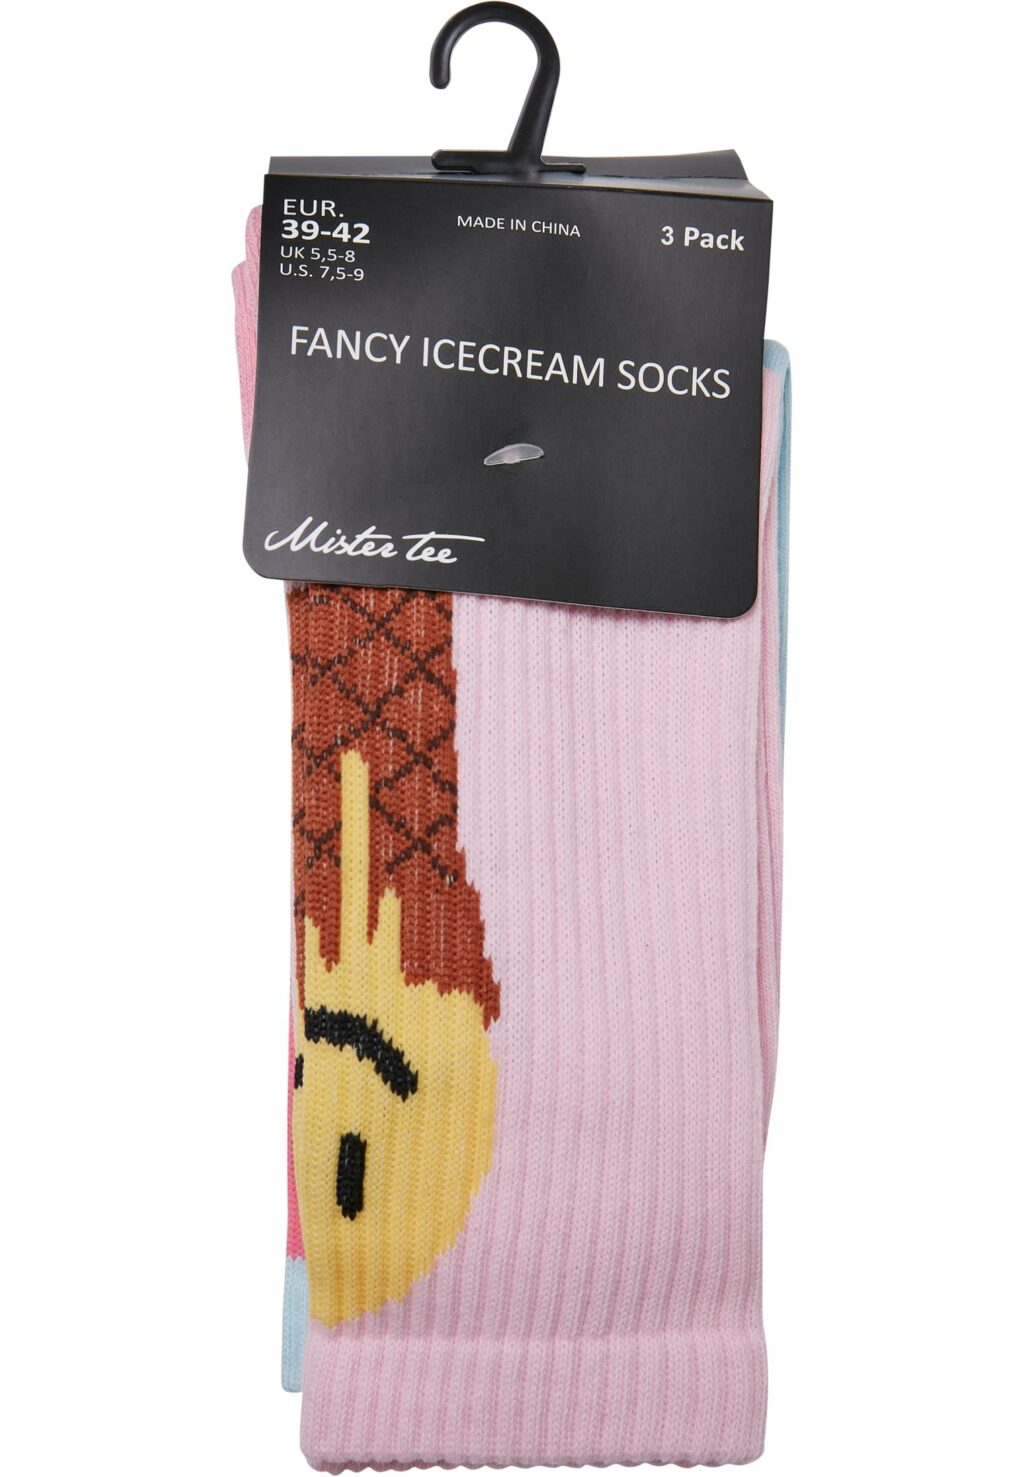 Fancy Icecream Socks 3-Pack white/multicolor MT2259